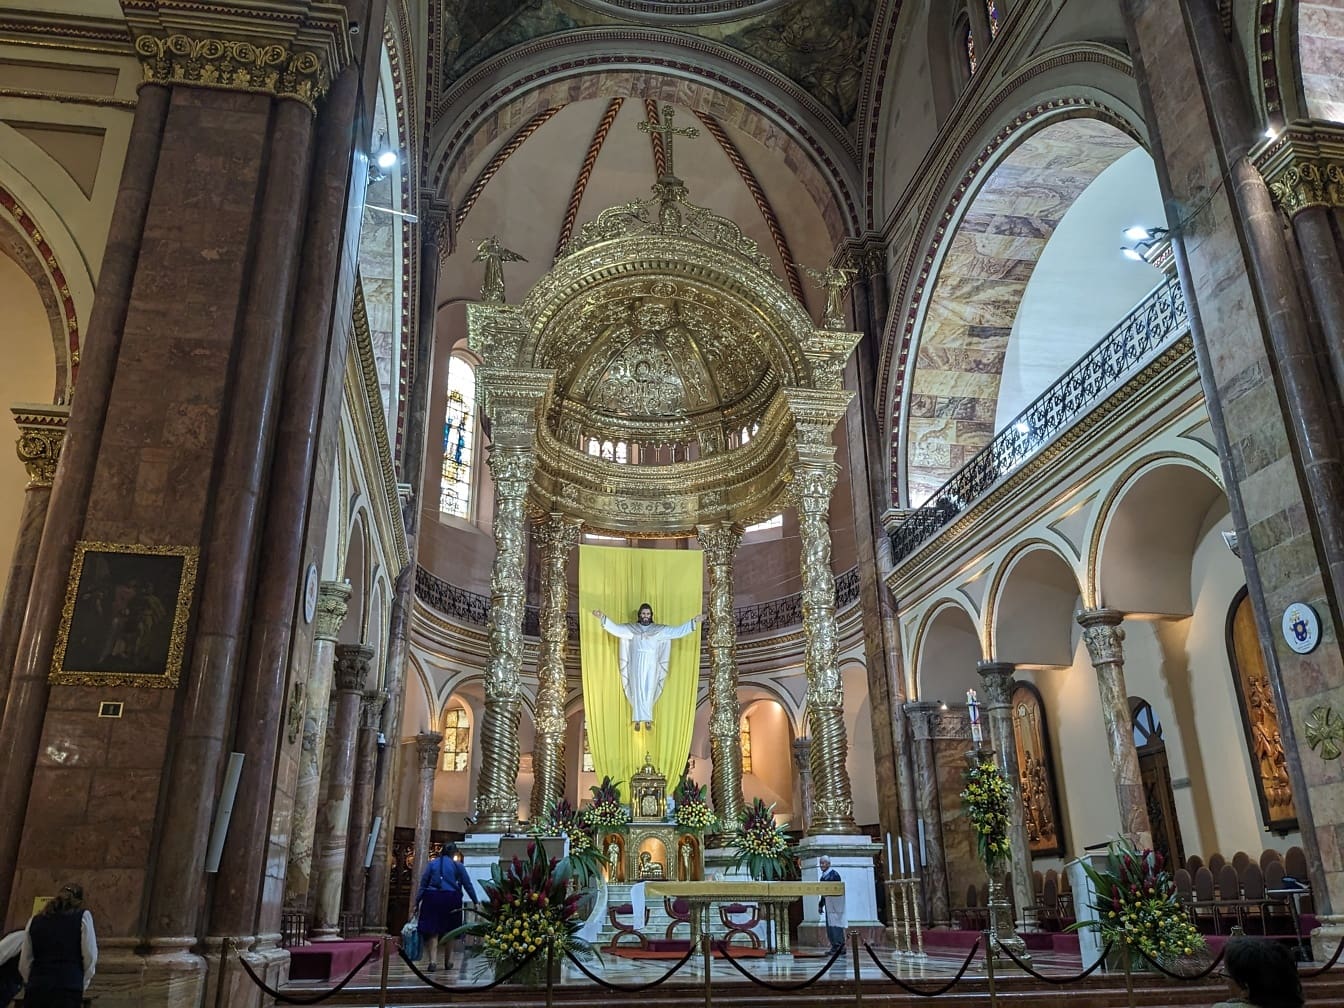 Stort gyllene utsmyckat altare med en staty av en Jesus Kristus i den nya katedralen i Cuenca i Ecuador